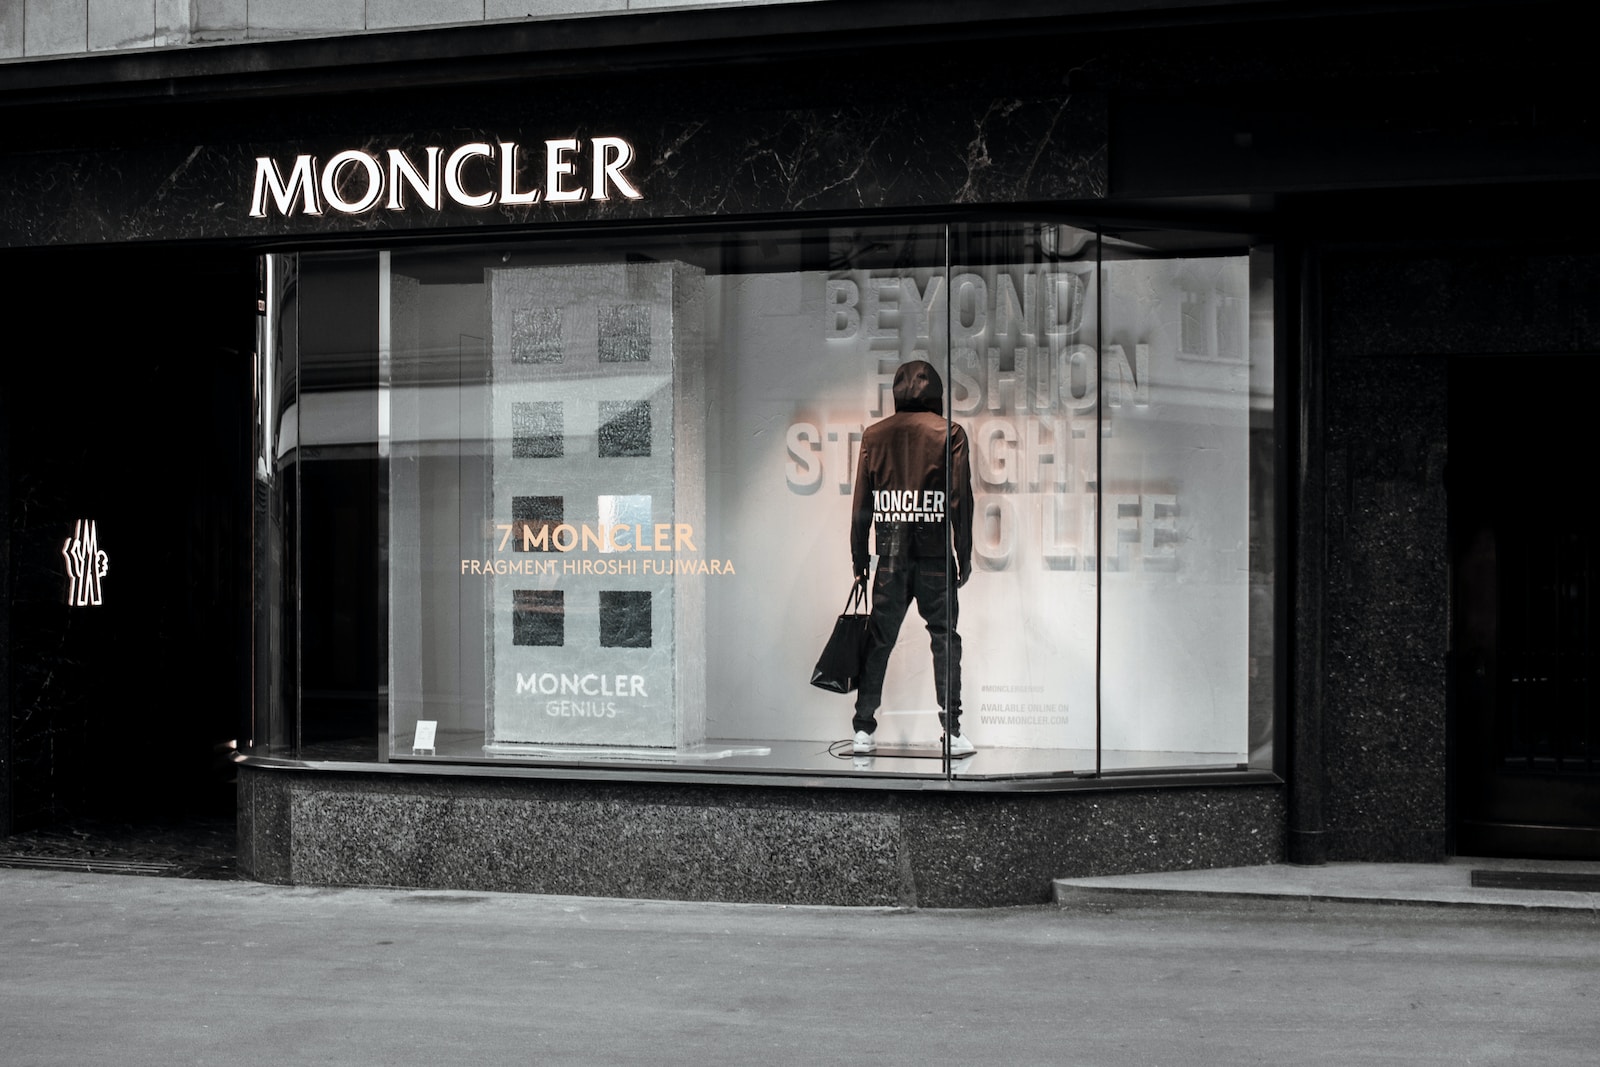 Is Moncler a Designer Brand?